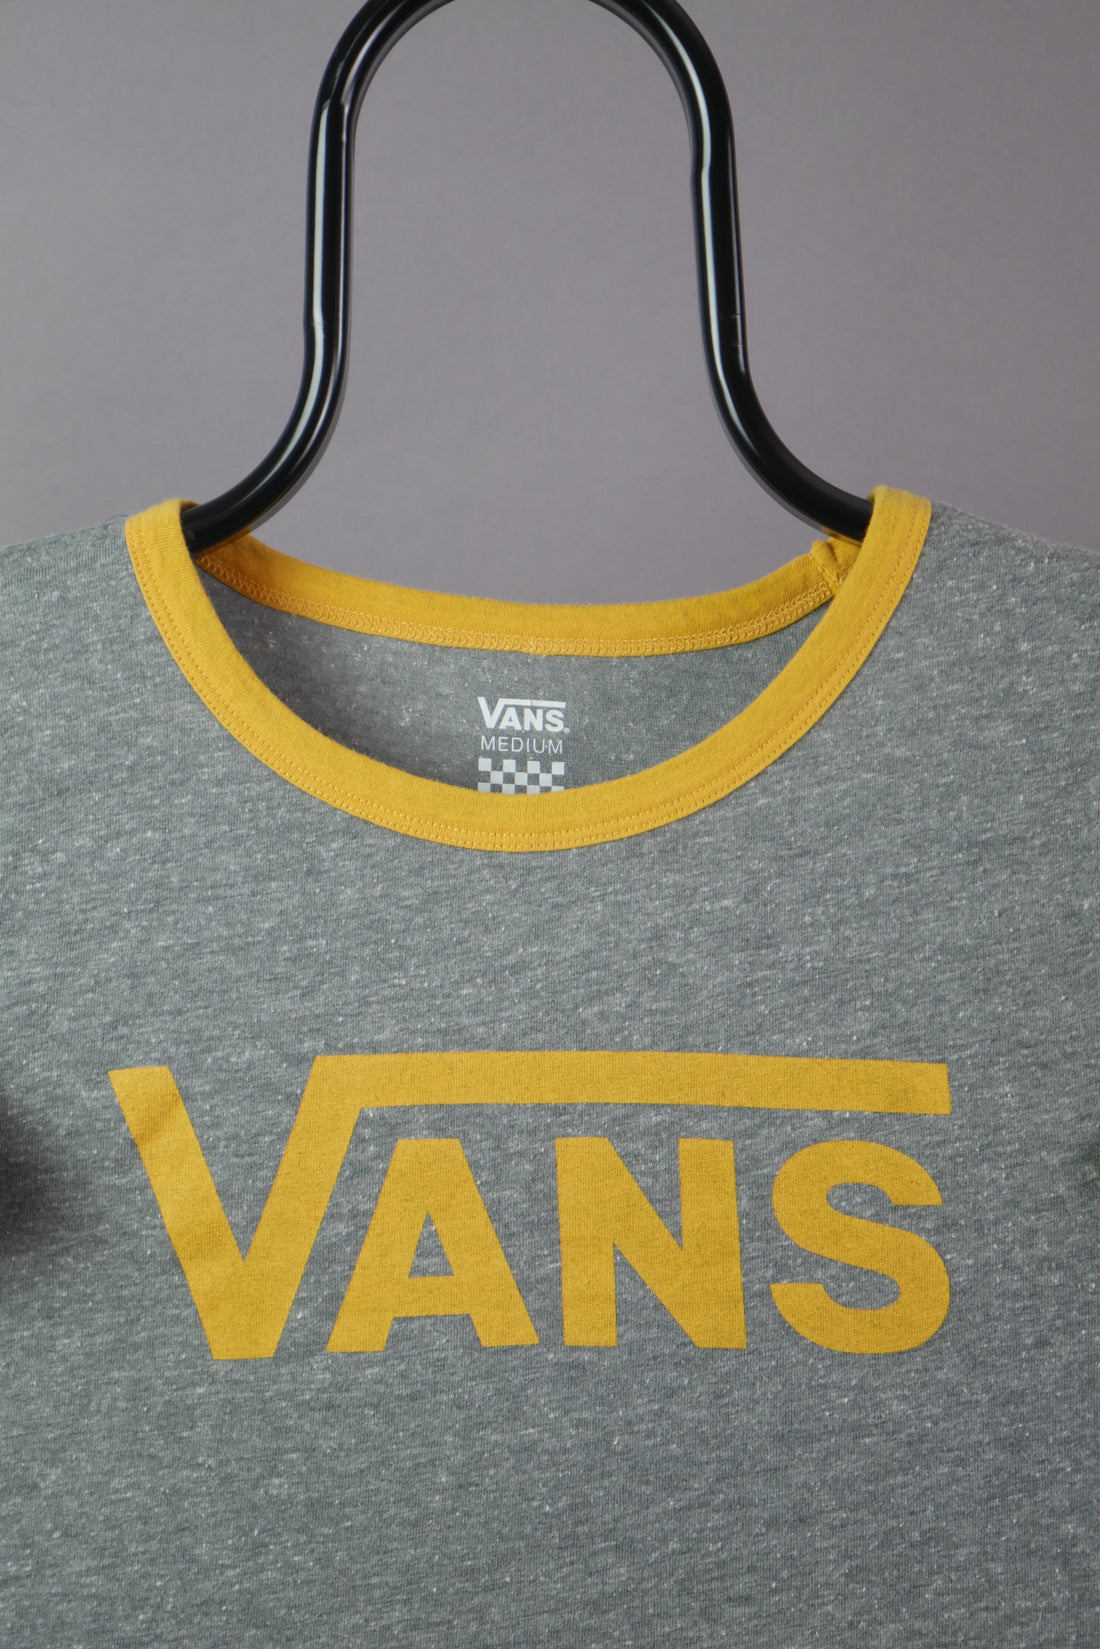 The Vans Ringer T-Shirt (Womens M)